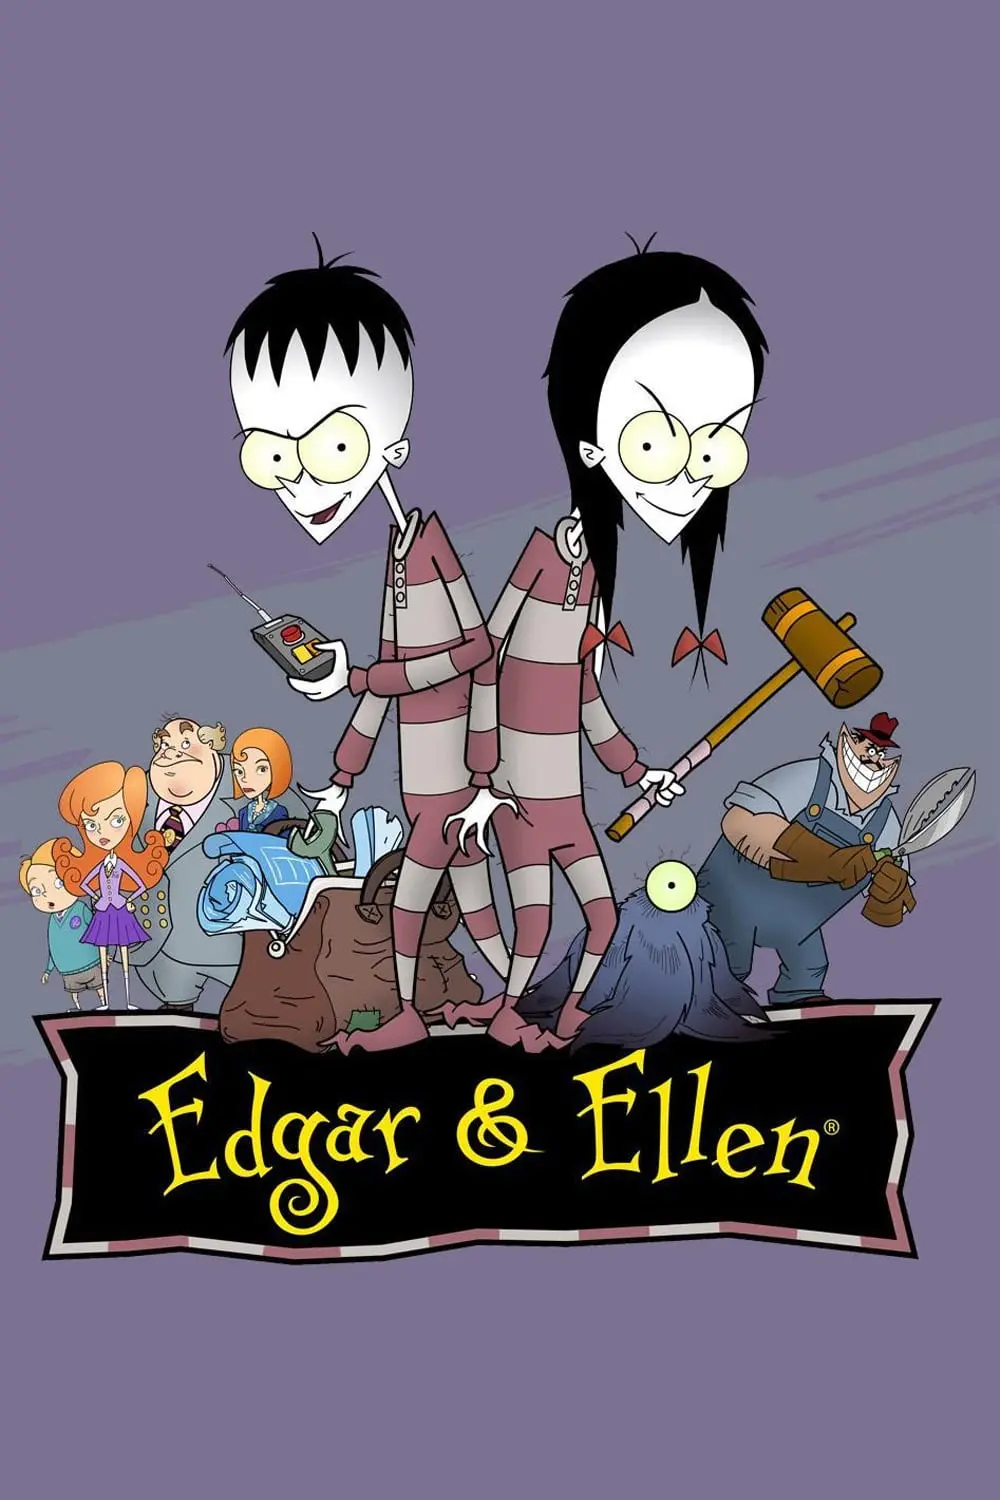 Edgar & Ellen_peliplat